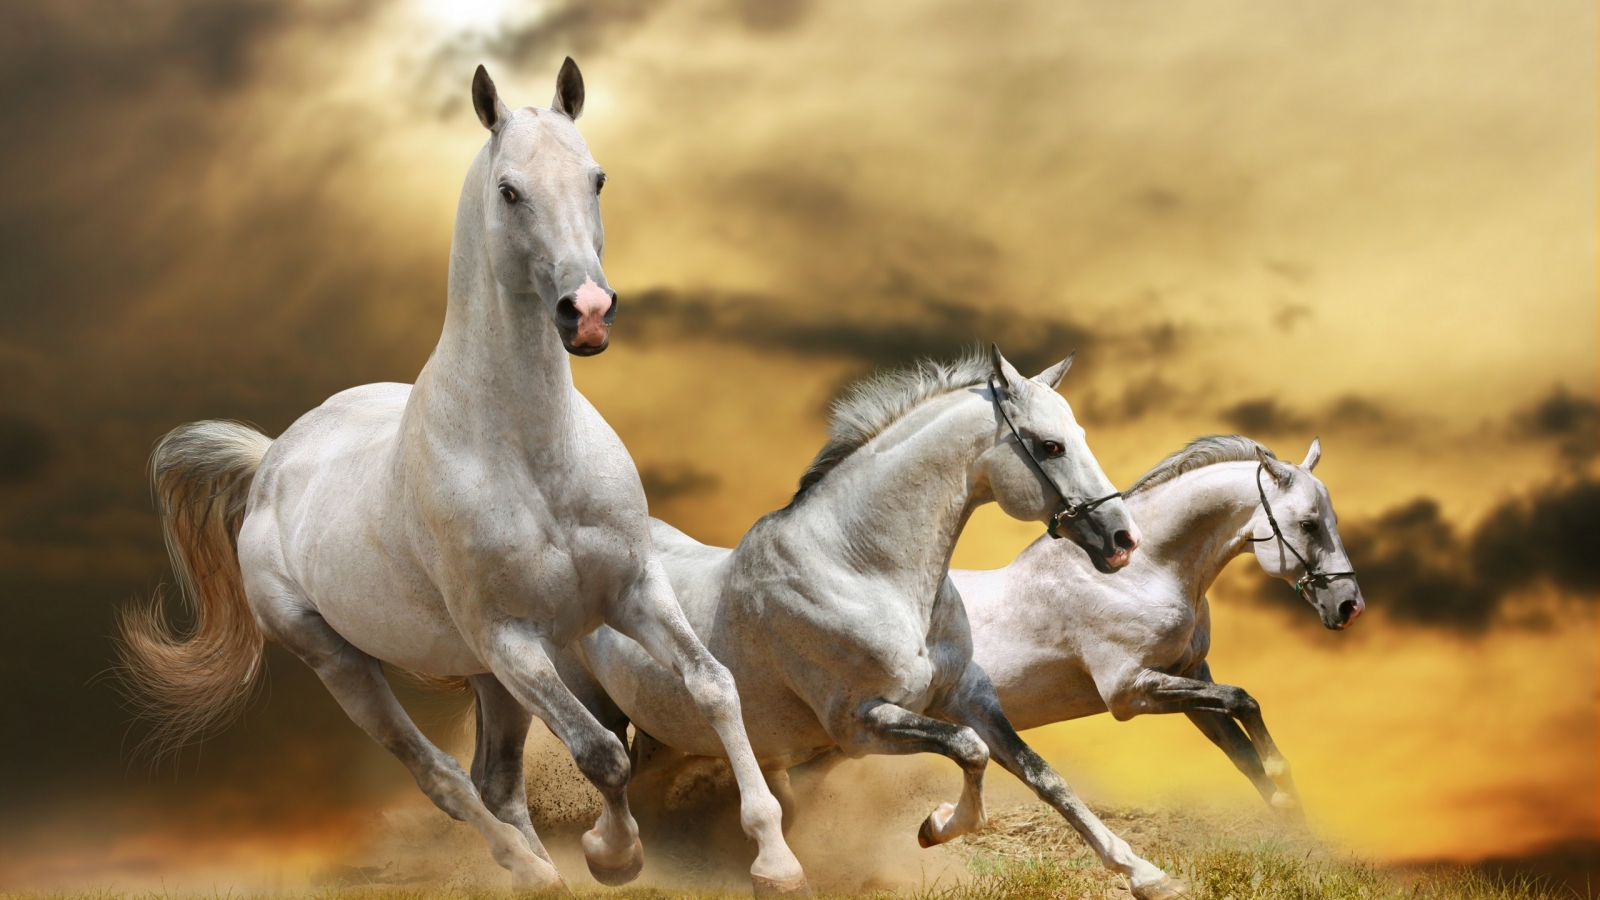 Wilde White Horses for 1600 x 900 HDTV resolution